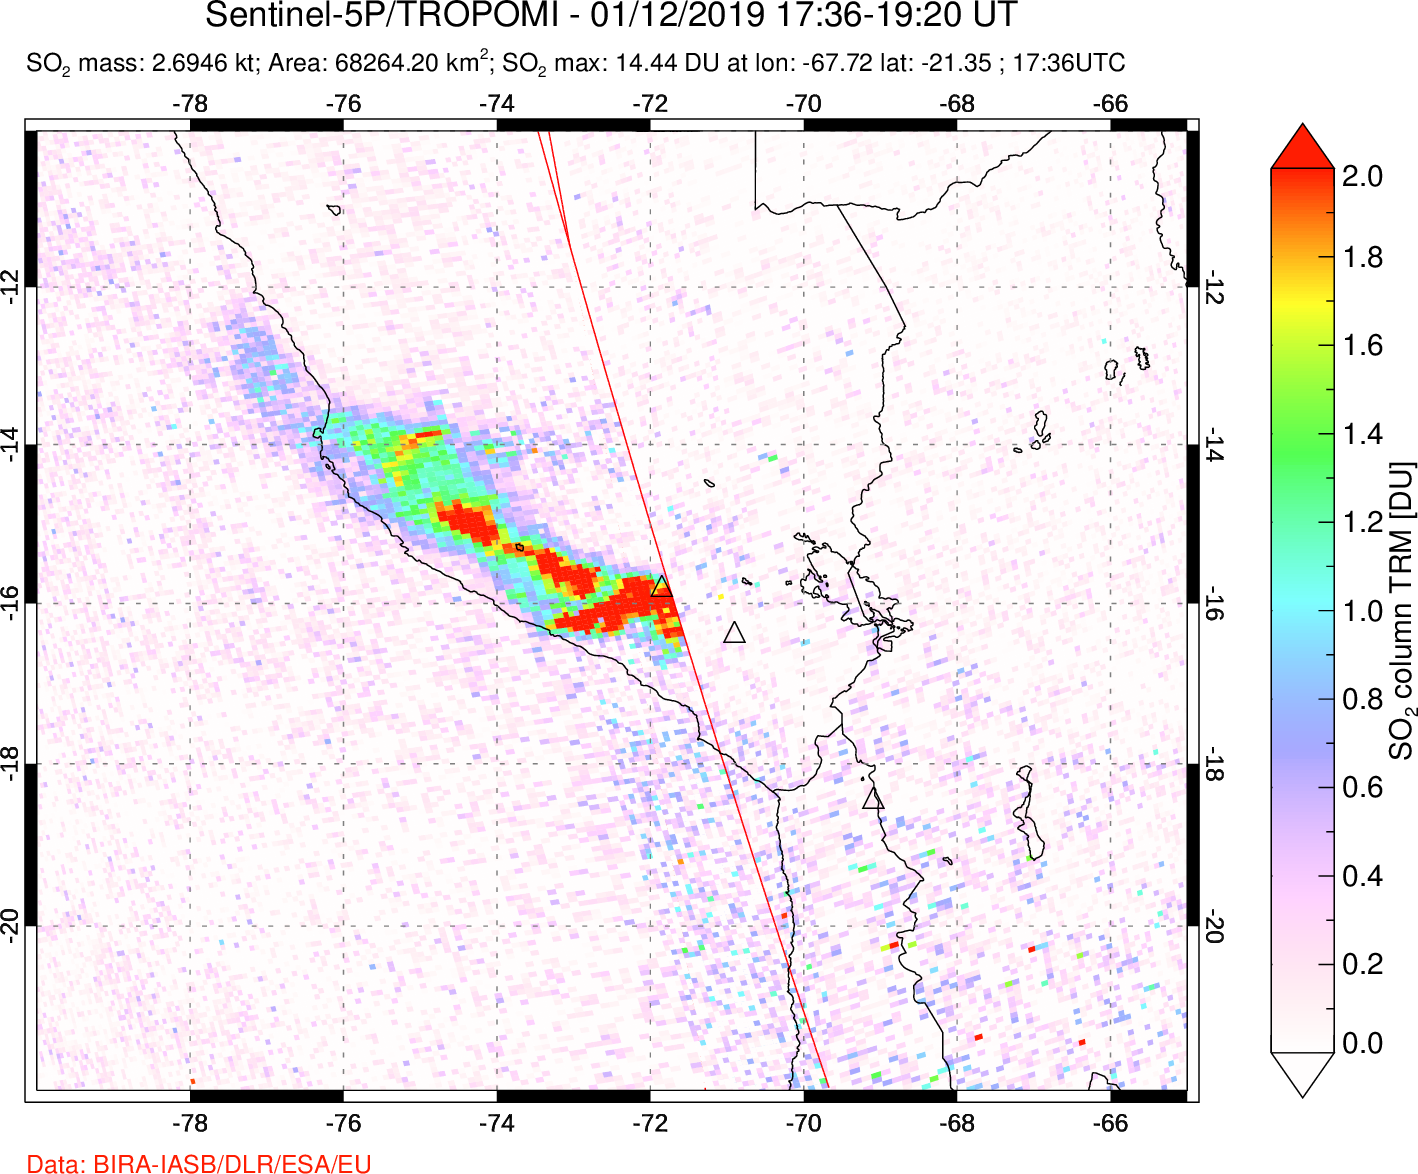 A sulfur dioxide image over Peru on Jan 12, 2019.